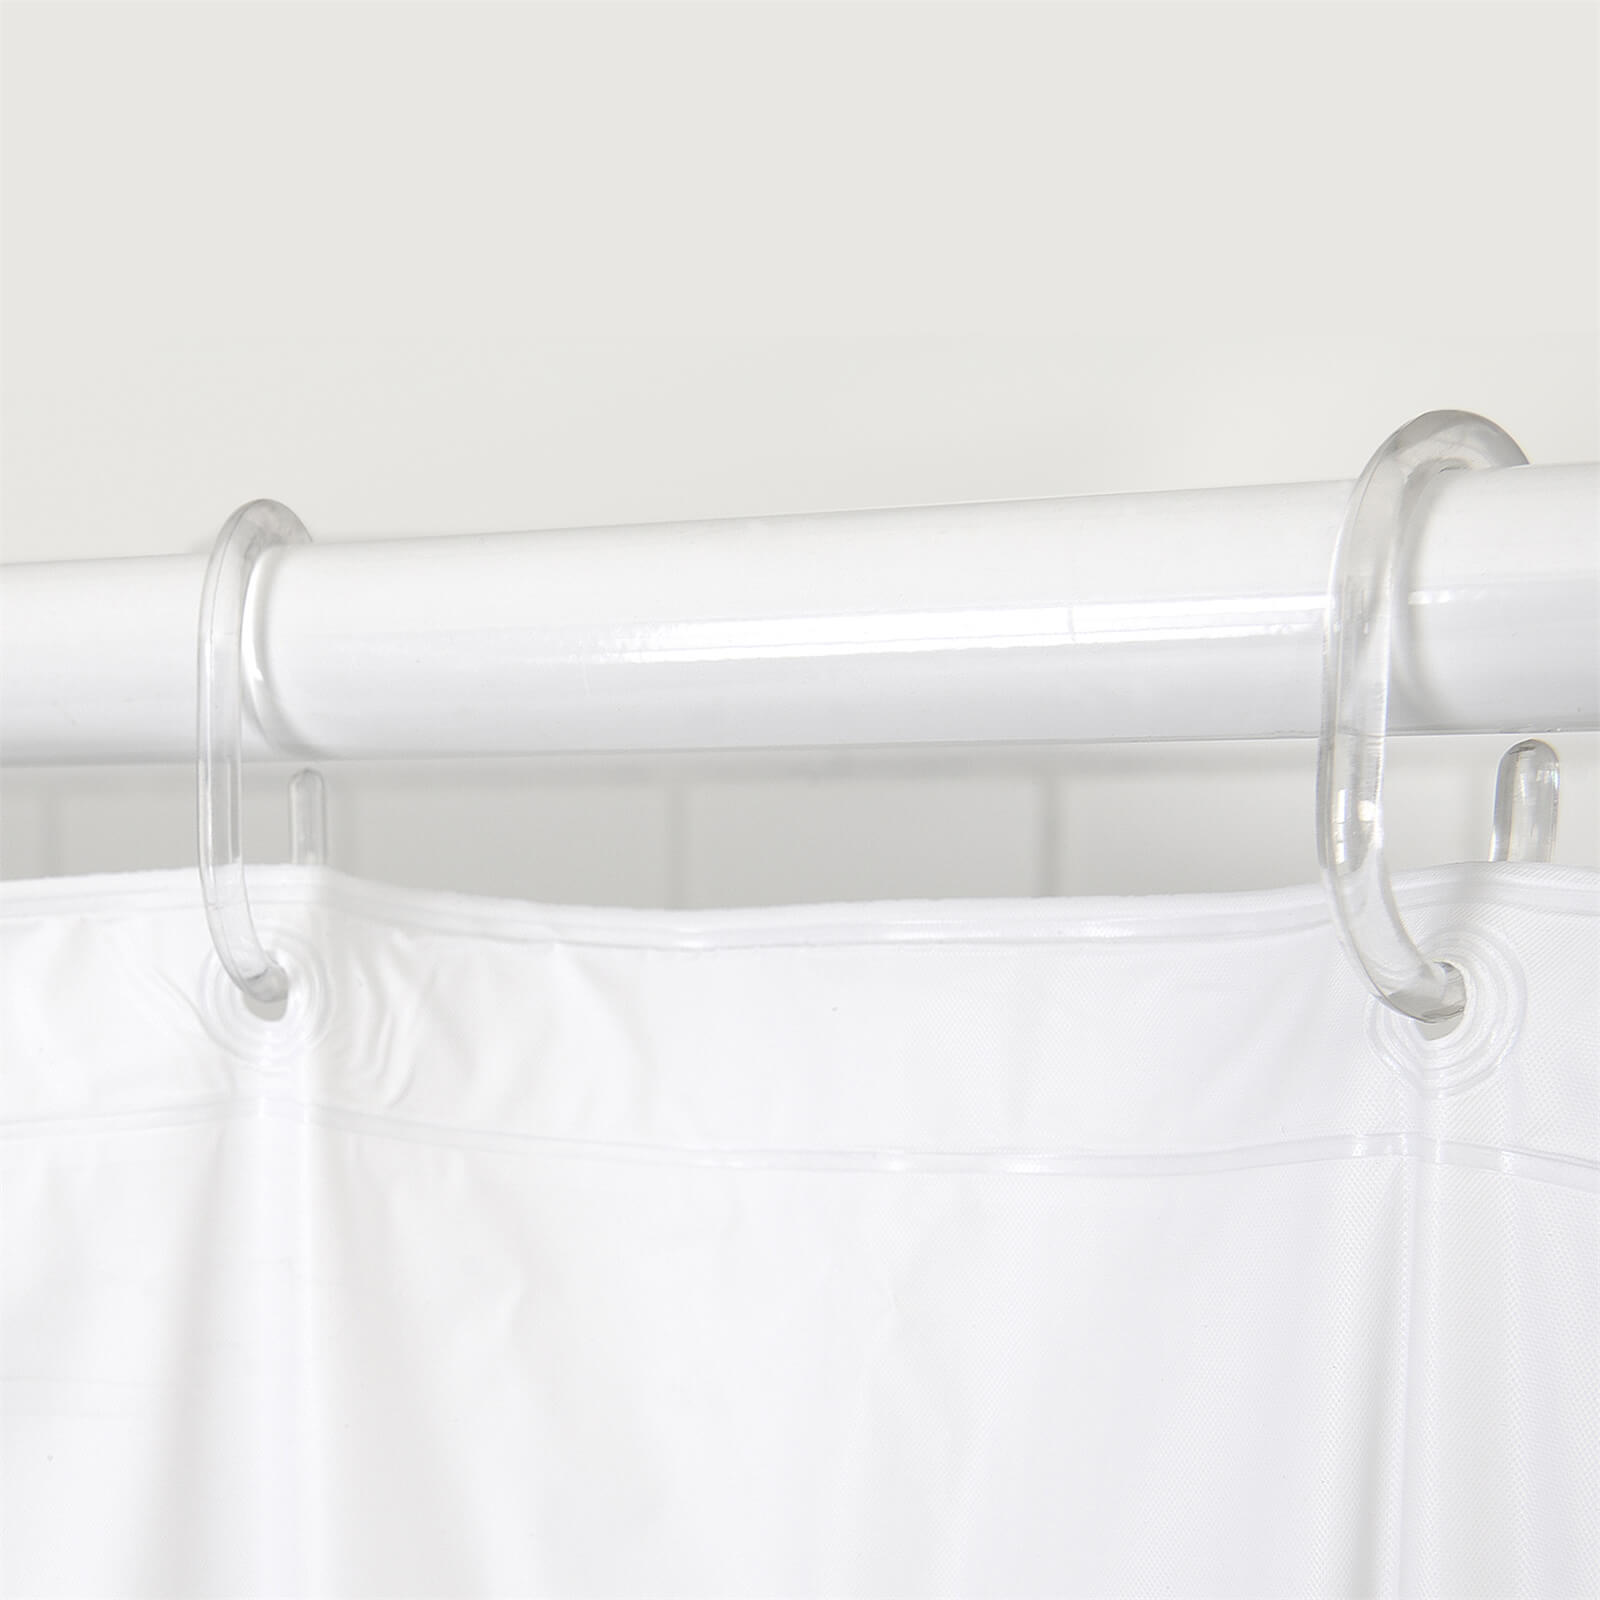 HBV PVC Shower Curtain - Plain White